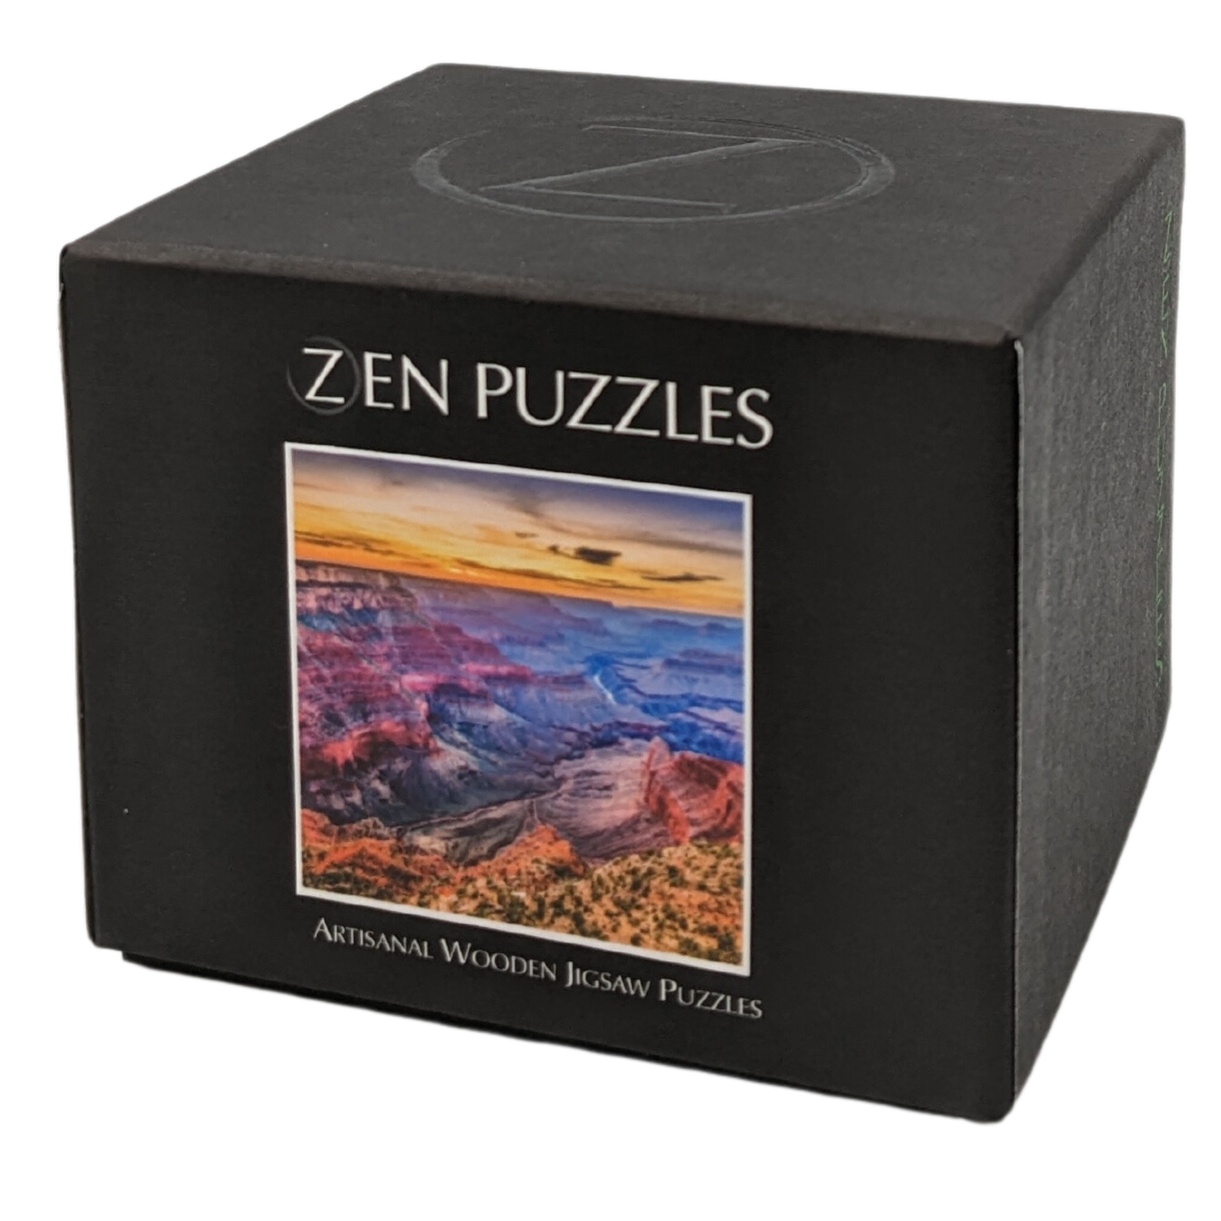 Zen Puzzles wholesale products